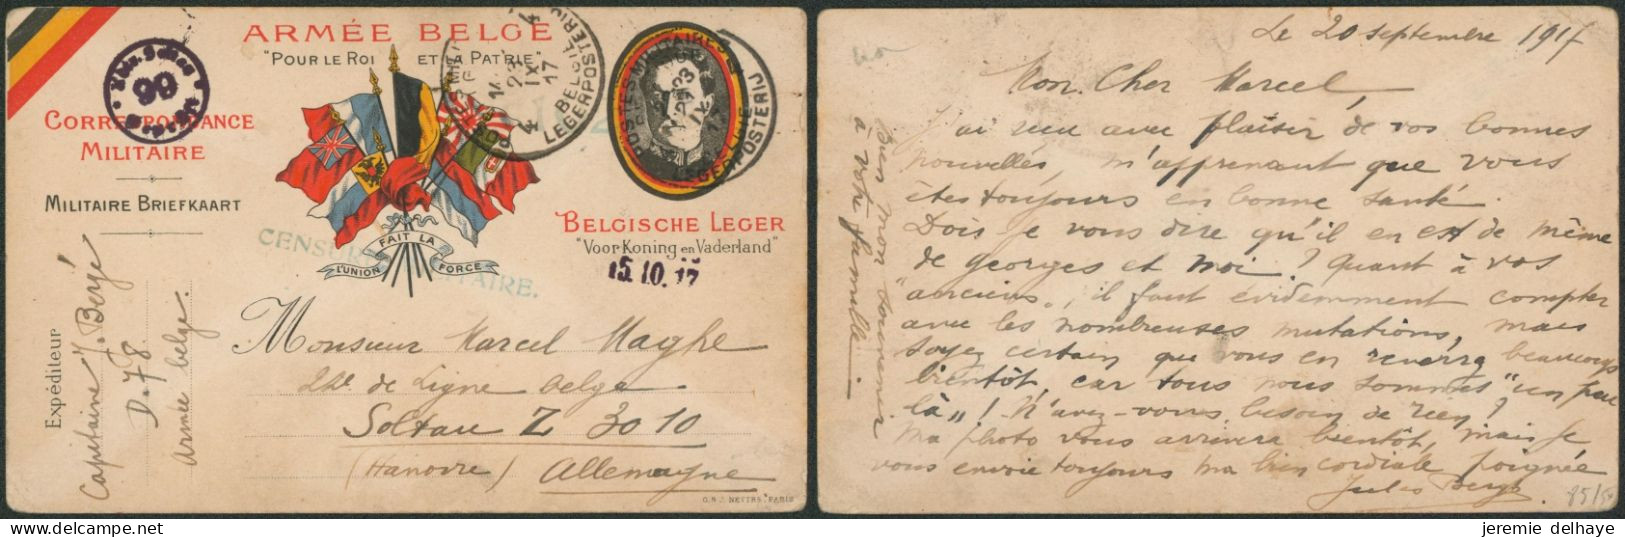 Carte Correspondance Militaire (Albert) Expédié Via P.M.B. 4 (1917) + Censure Verte > Prisonnier Belge à Soltau. - Armée Belge